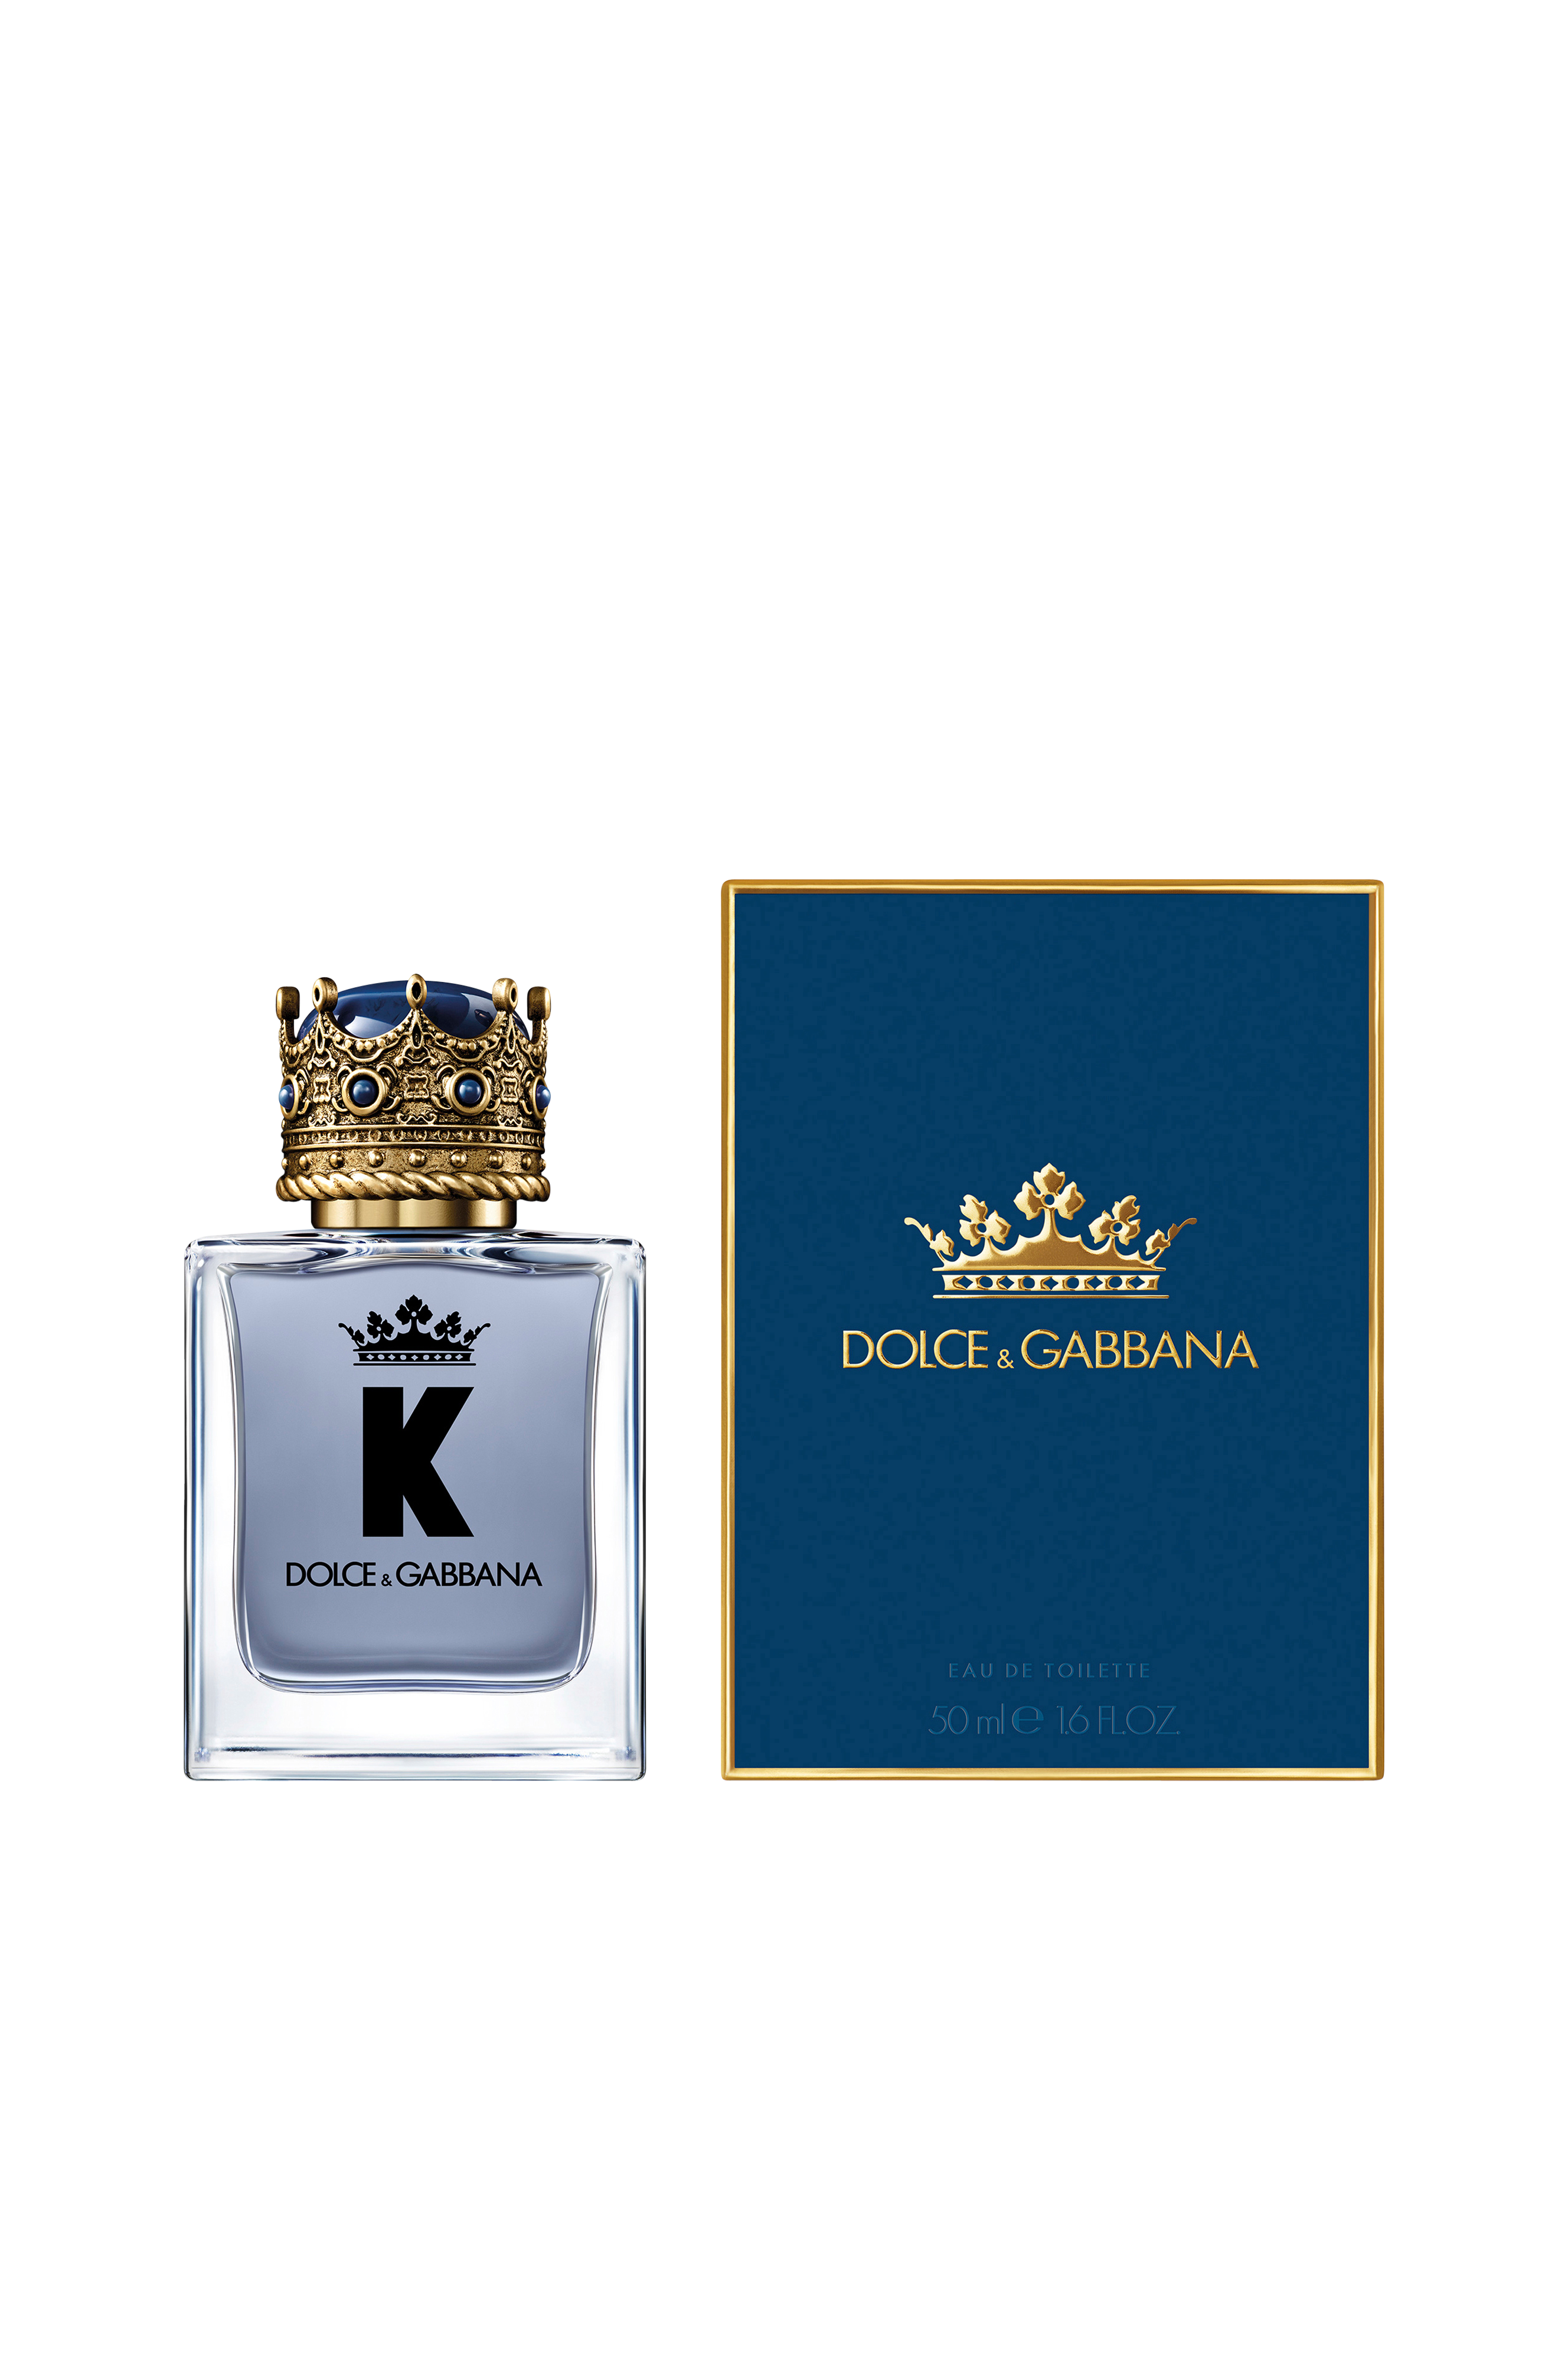 Дольче габбана духи с короной женские. Духи Dolce Gabbana King. Dolce & Gabbana k m EDT 50 ml. Dolce Gabbana духи мужские King. Dolce and Gabbana King 50 ml.